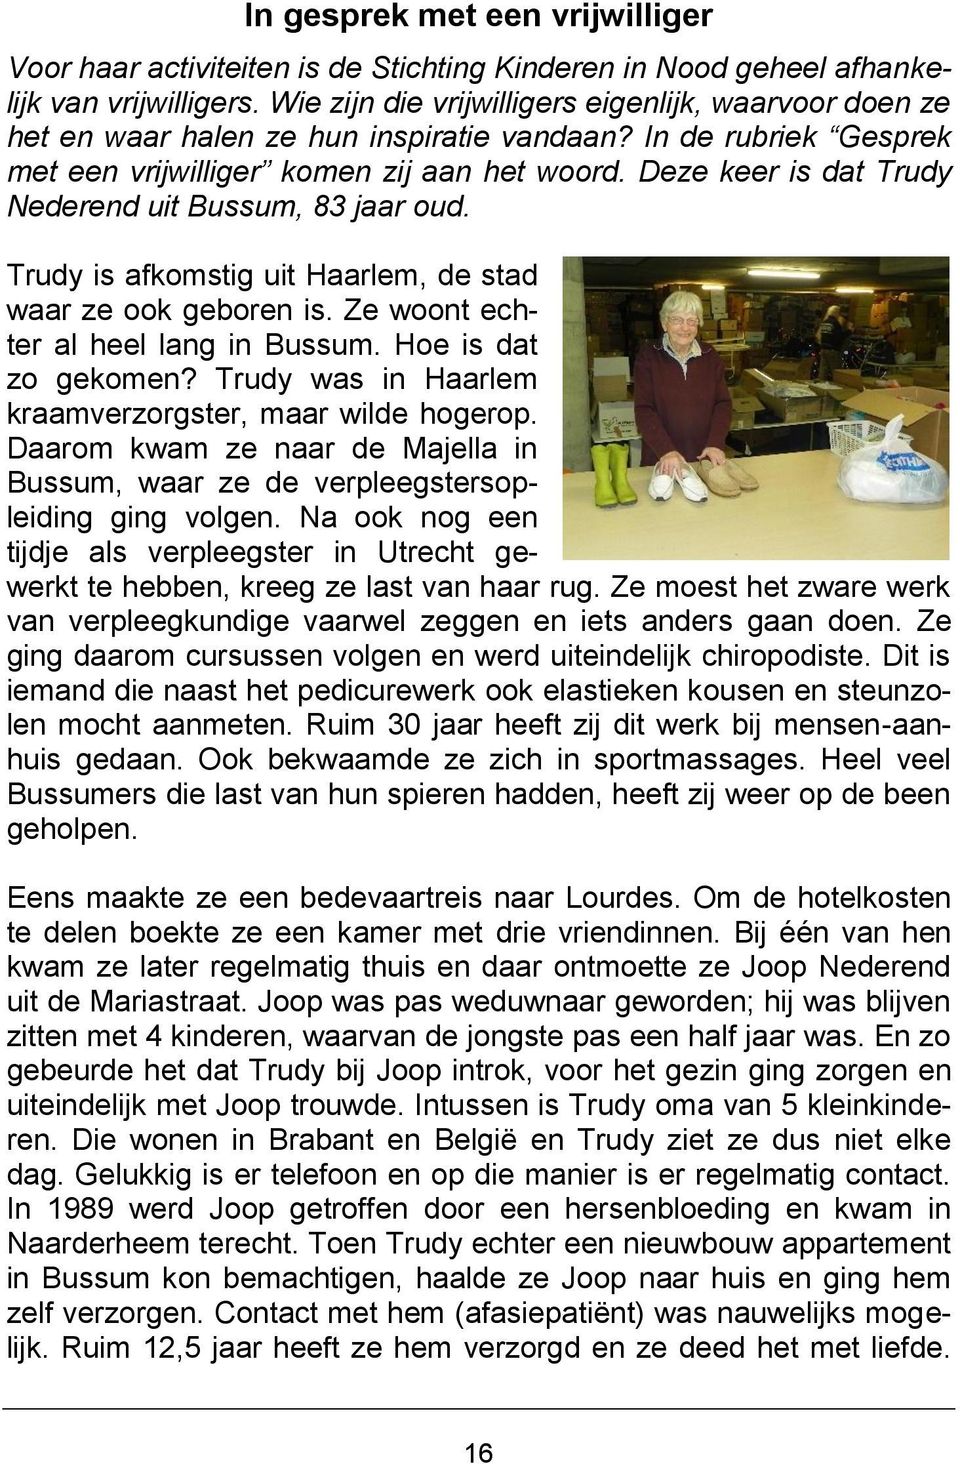 Deze keer is dat Trudy Nederend uit Bussum, 83 jaar oud. Trudy is afkomstig uit Haarlem, de stad waar ze ook geboren is. Ze woont echter al heel lang in Bussum. Hoe is dat zo gekomen?